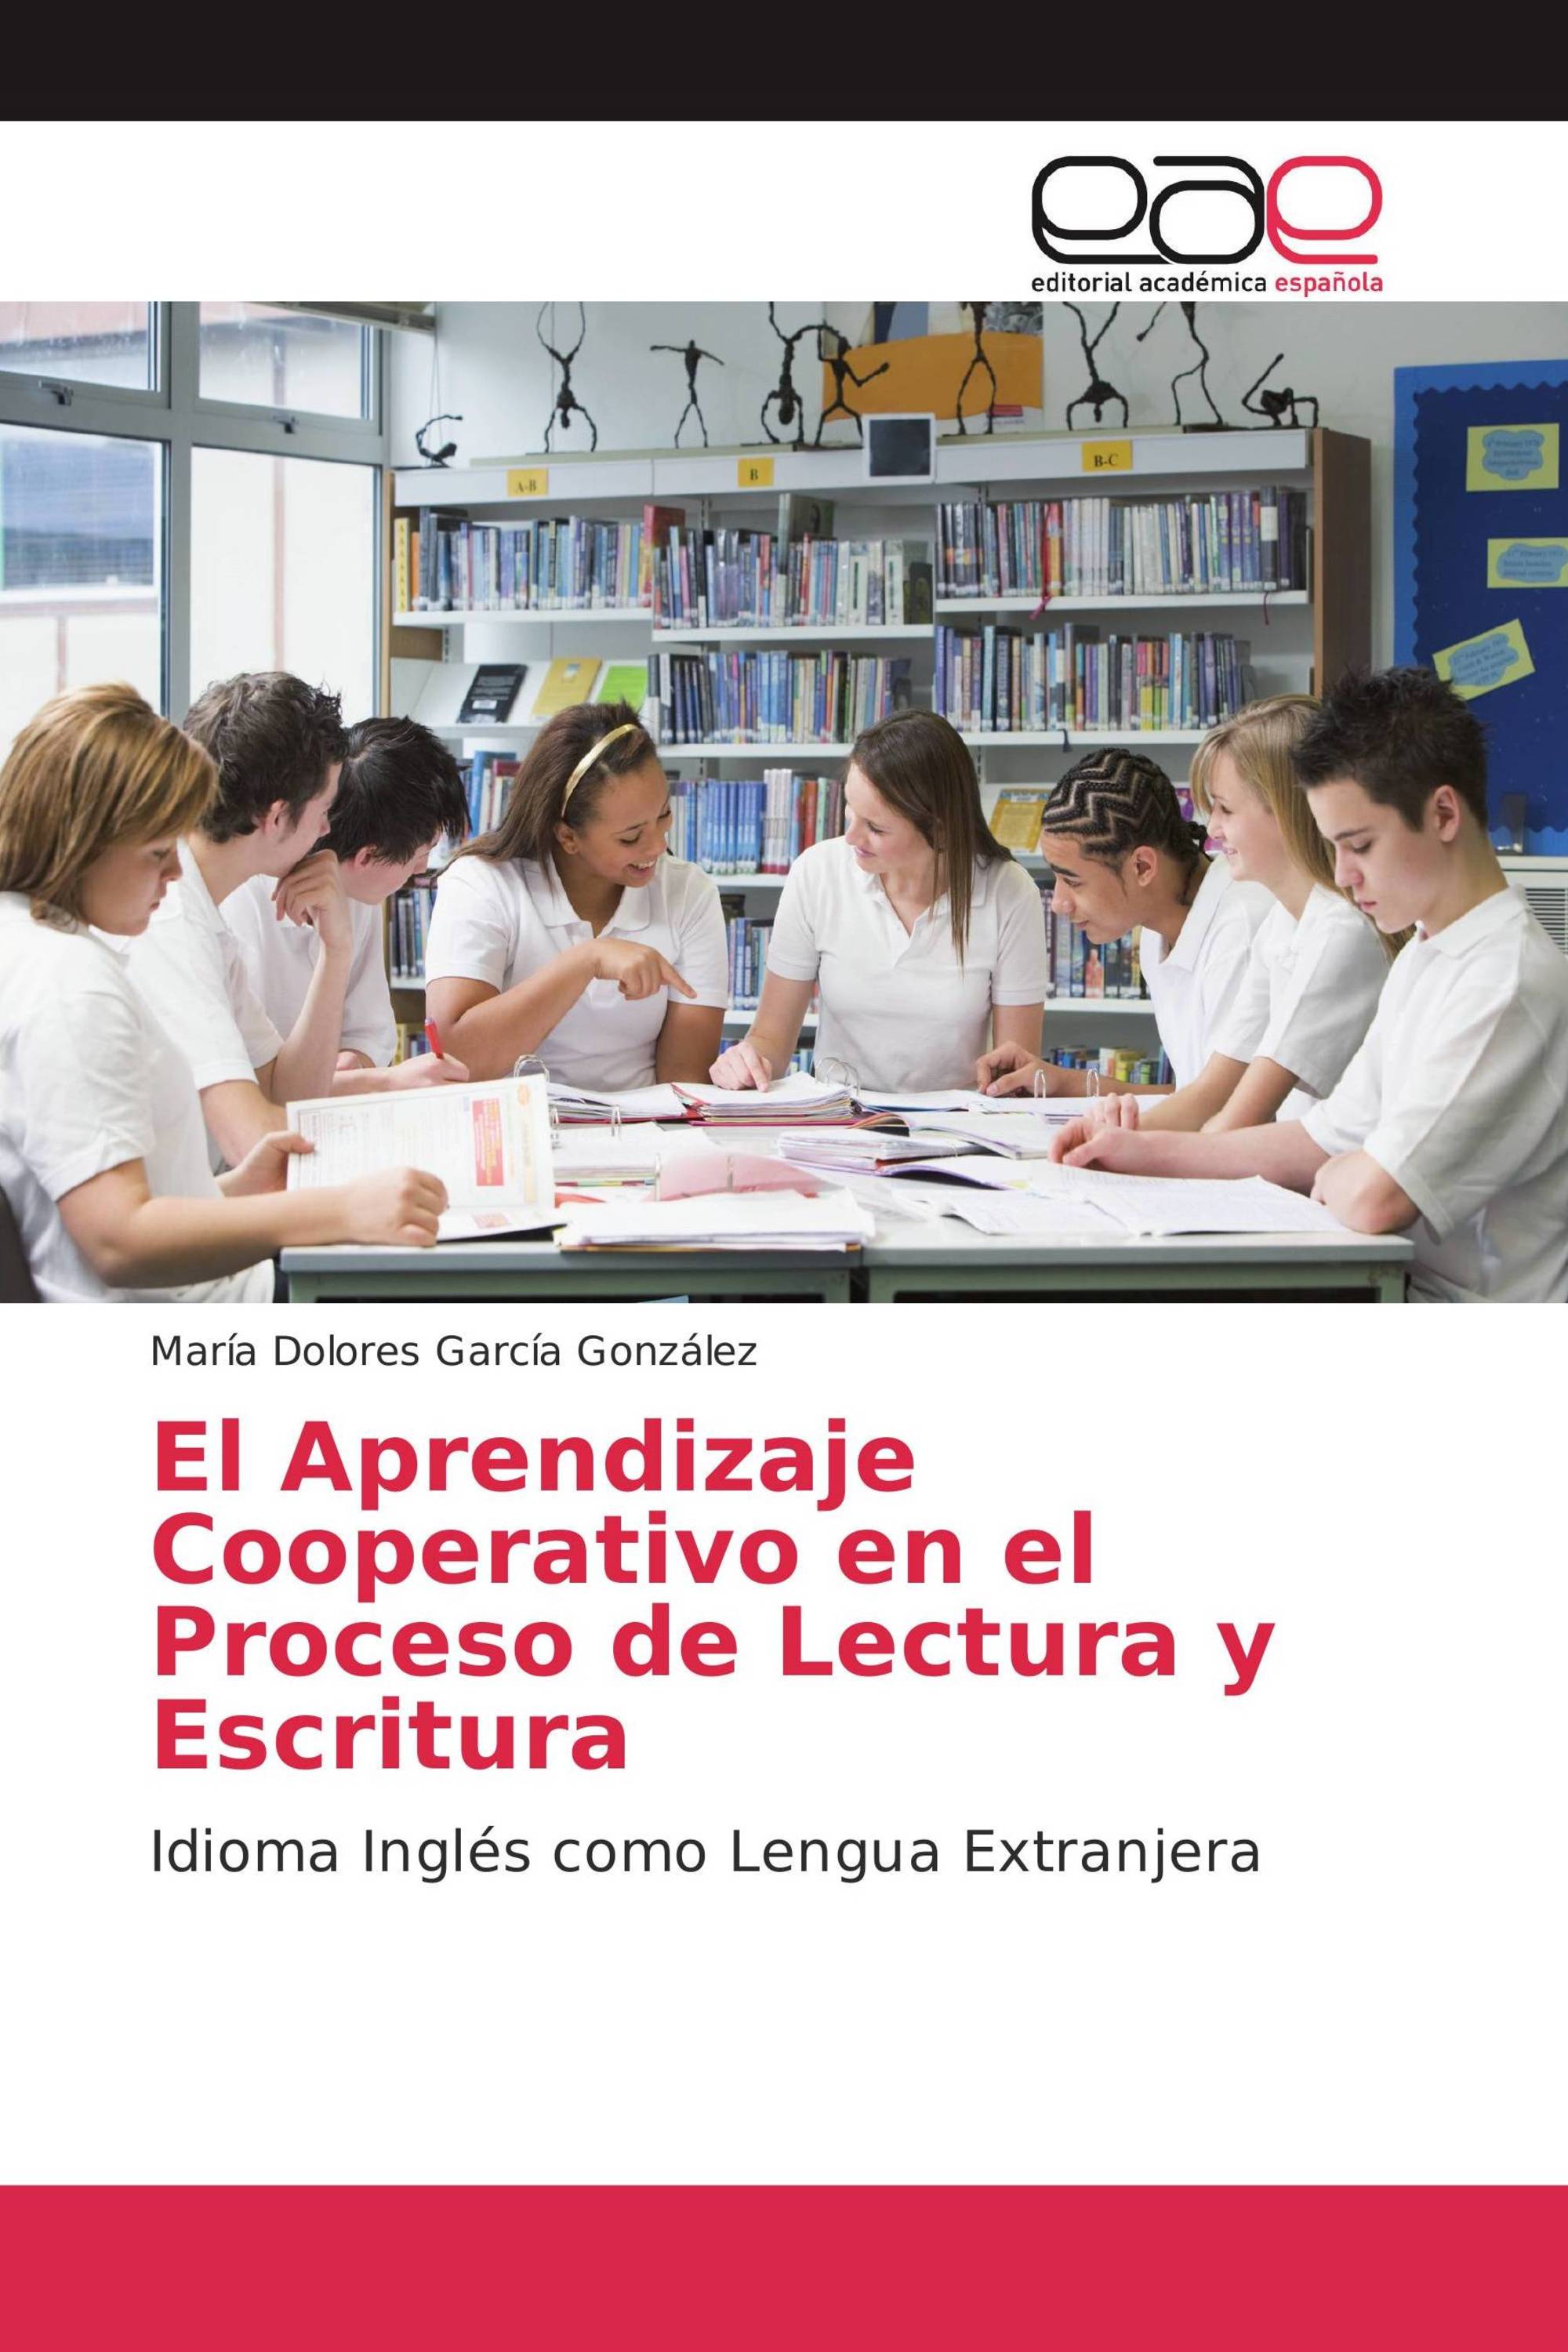 El Aprendizaje Cooperativo en el Proceso de Lectura y Escritura